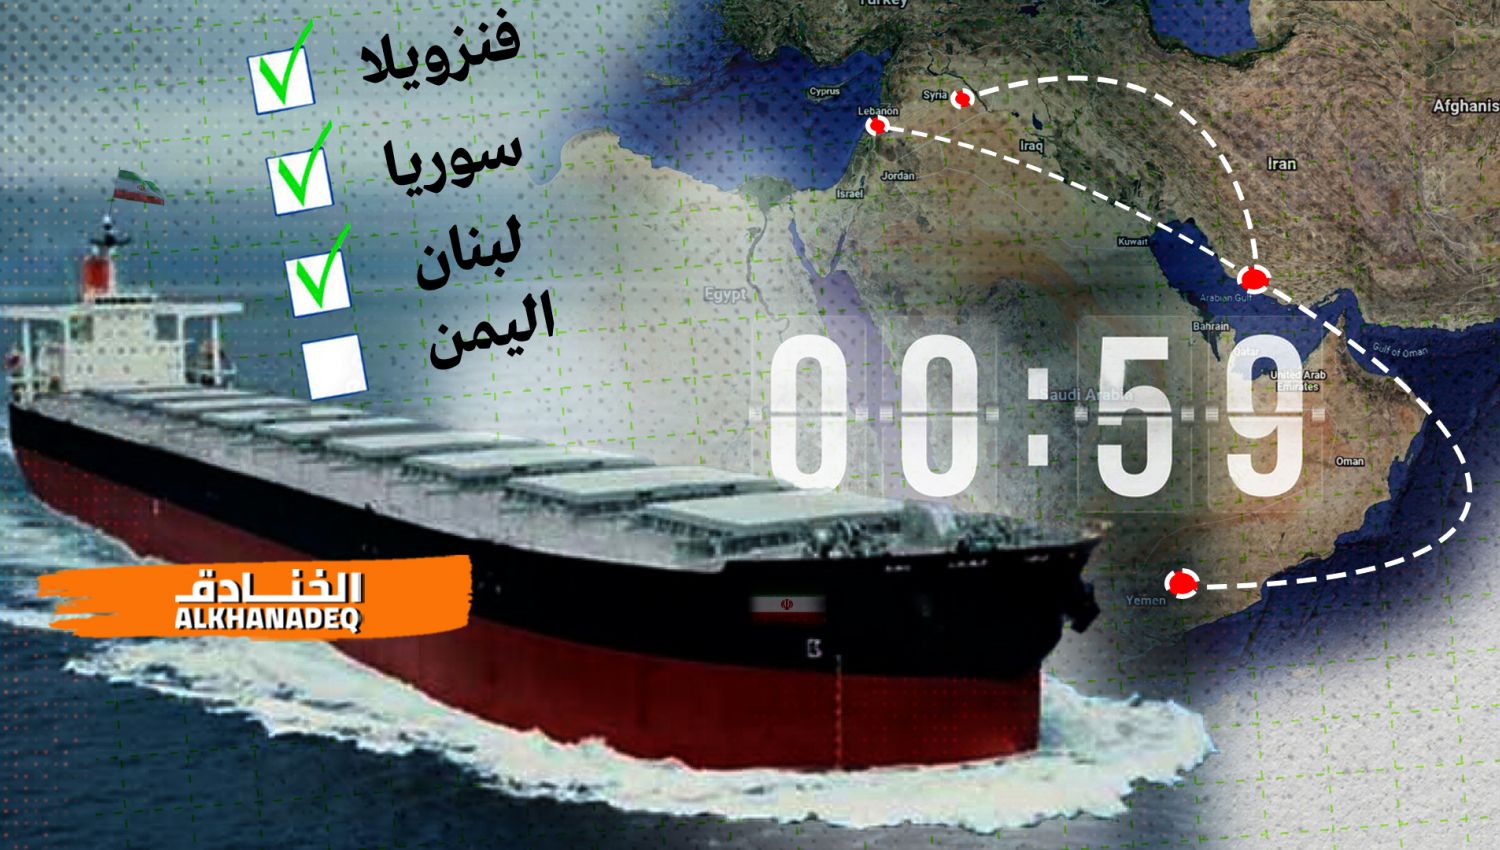 معادلة كسر الحصار: السفن الإيرانية إلى اليمن بعد سوريا ولبنان!